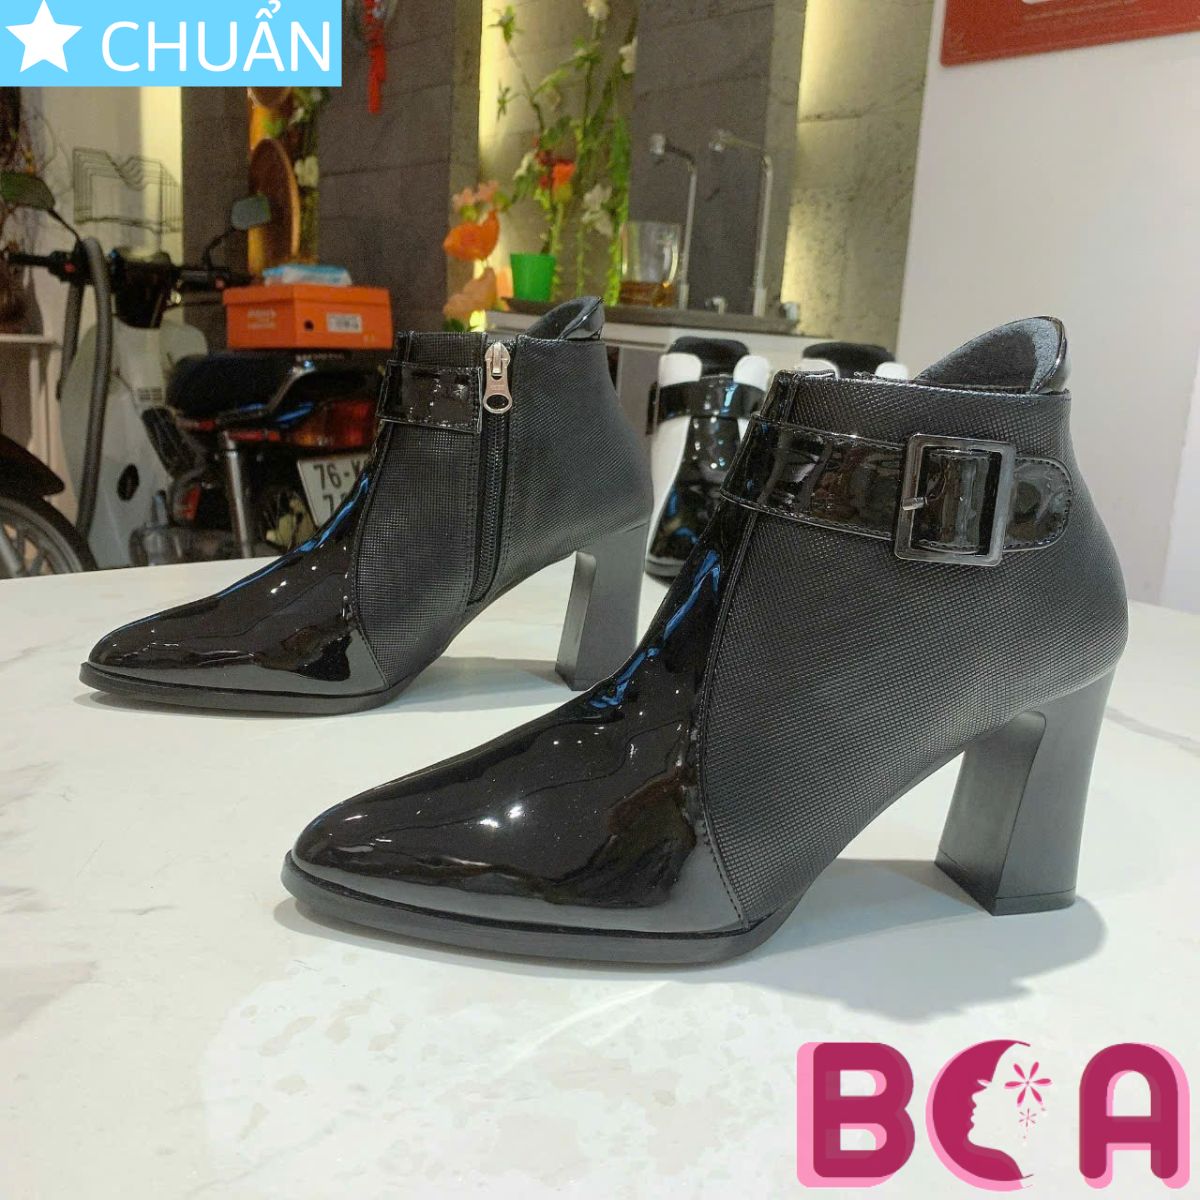 Giày bốt nữ cổ thấp 8p RO603 ROSATA tại BCASHOP kết hợp phần sau giày vân nổi và phần mũi bóng sành điệu, thời trang